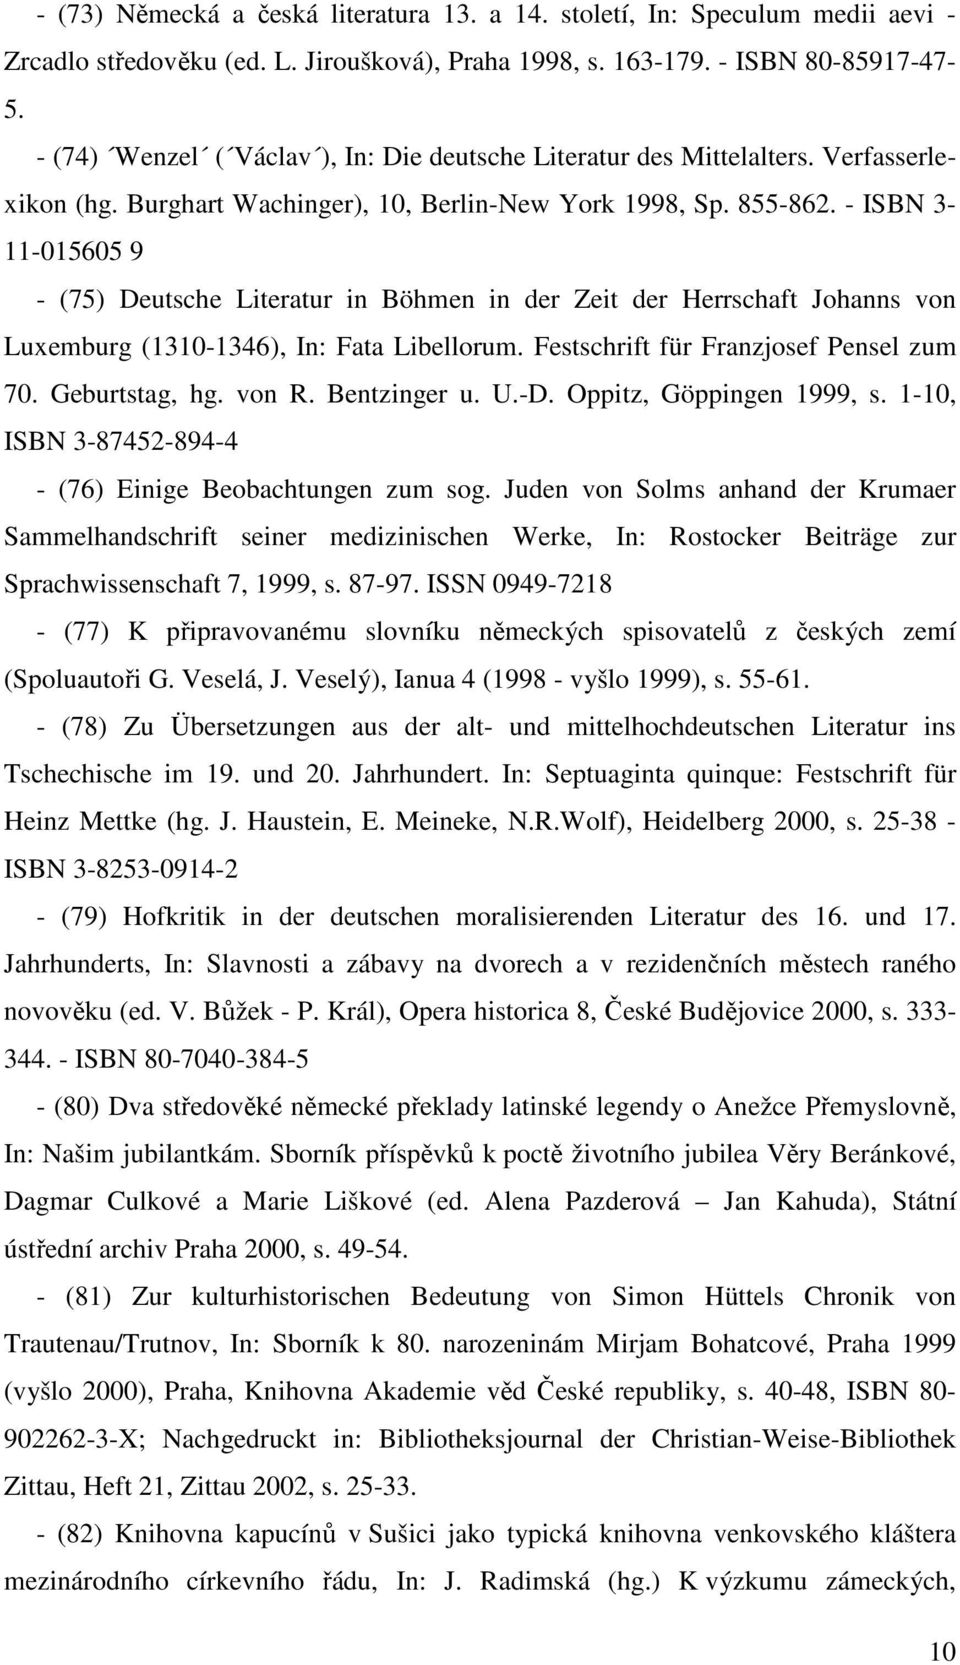 - ISBN 3-11-015605 9 - (75) Deutsche Literatur in Böhmen in der Zeit der Herrschaft Johanns von Luxemburg (1310-1346), In: Fata Libellorum. Festschrift für Franzjosef Pensel zum 70. Geburtstag, hg.